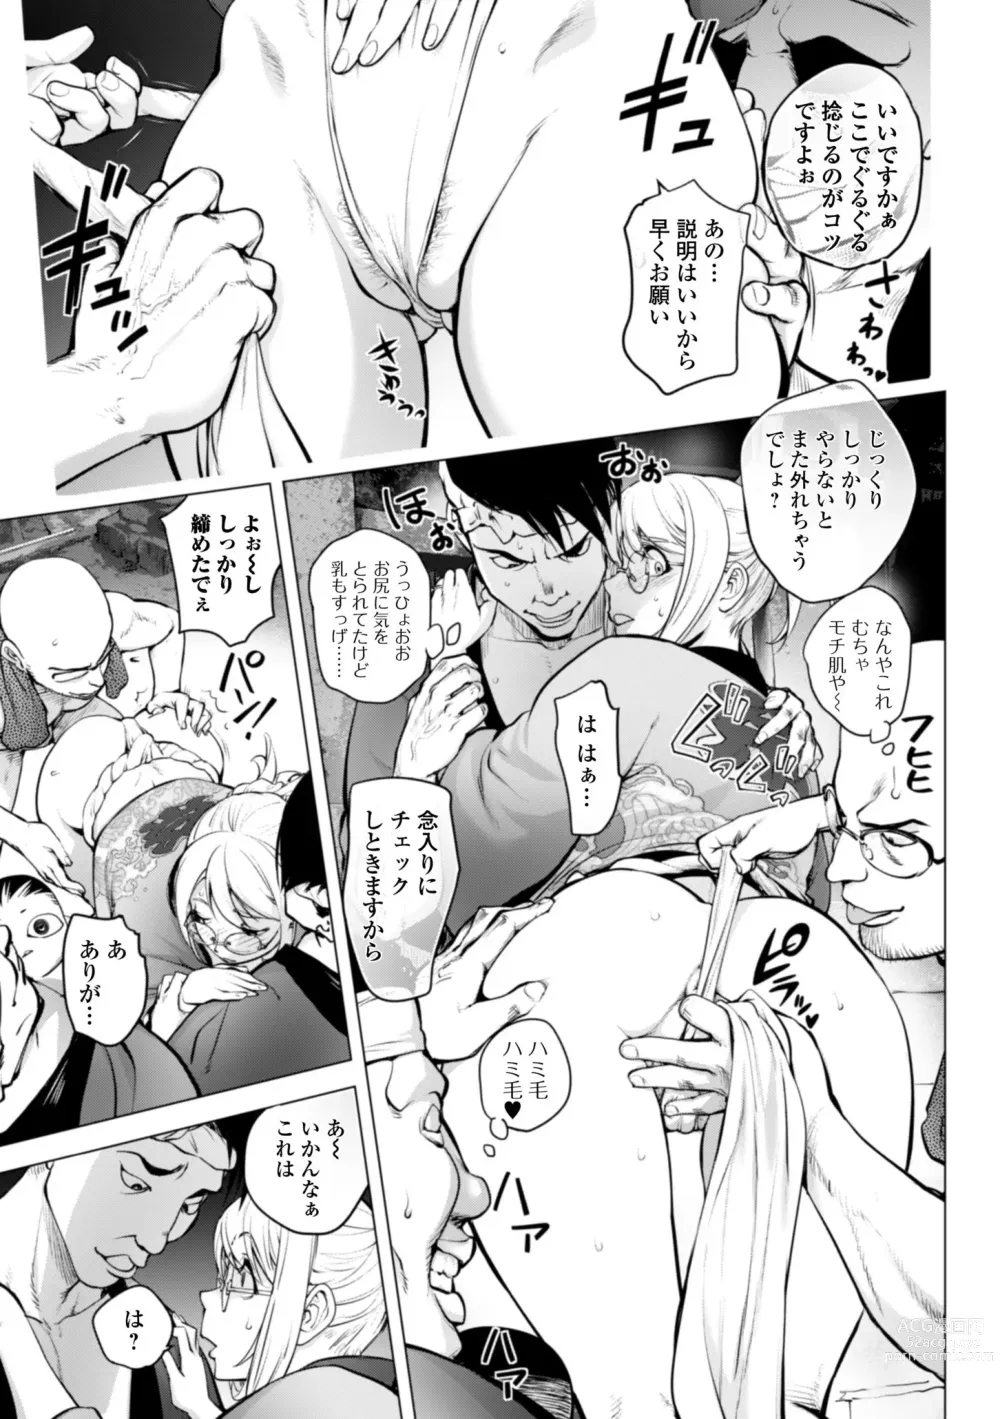 Page 7 of manga Kaya-nee no Fundoshi Matsuri